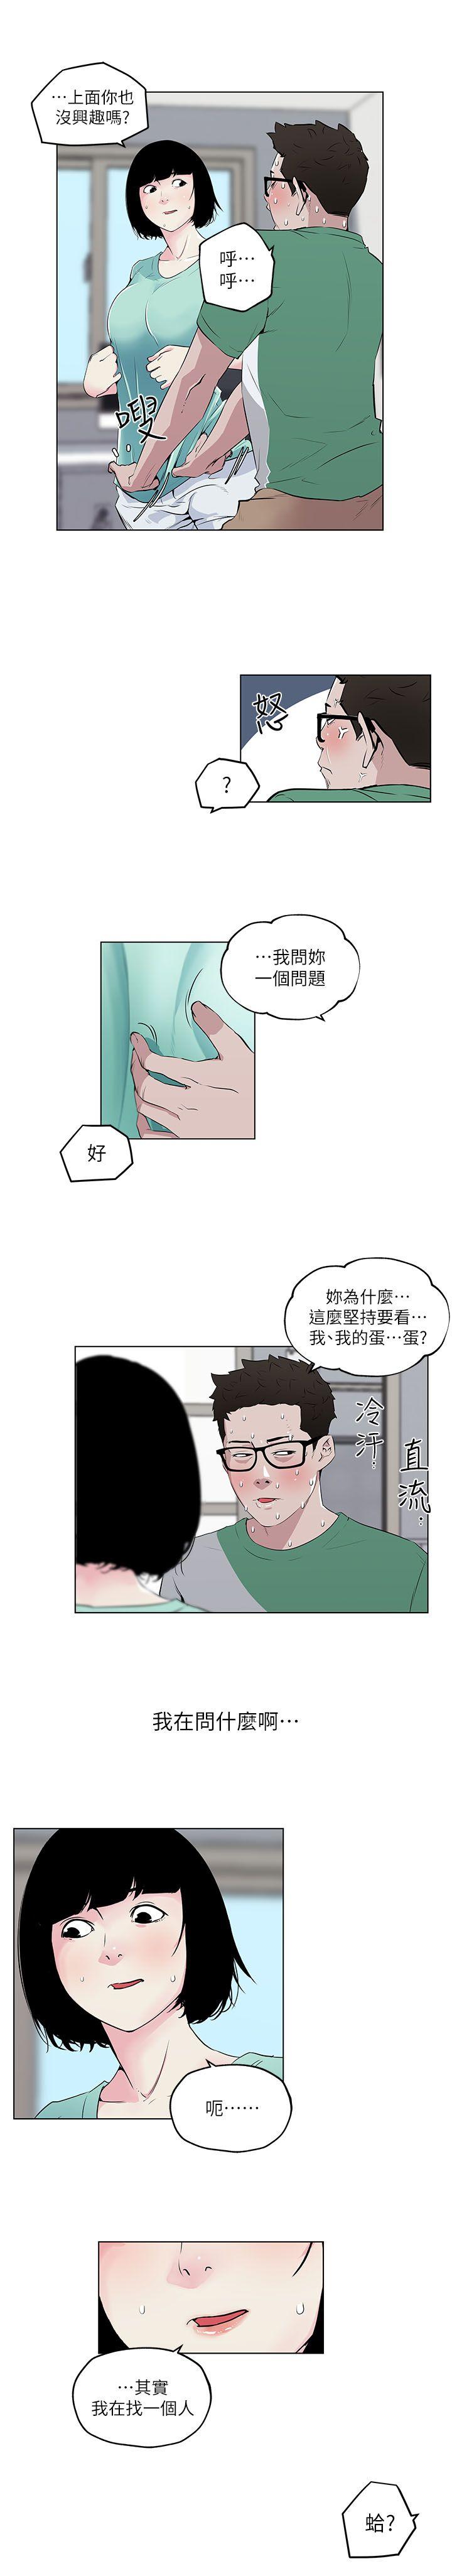 韩国污漫画 打開她的苞 第5话 12